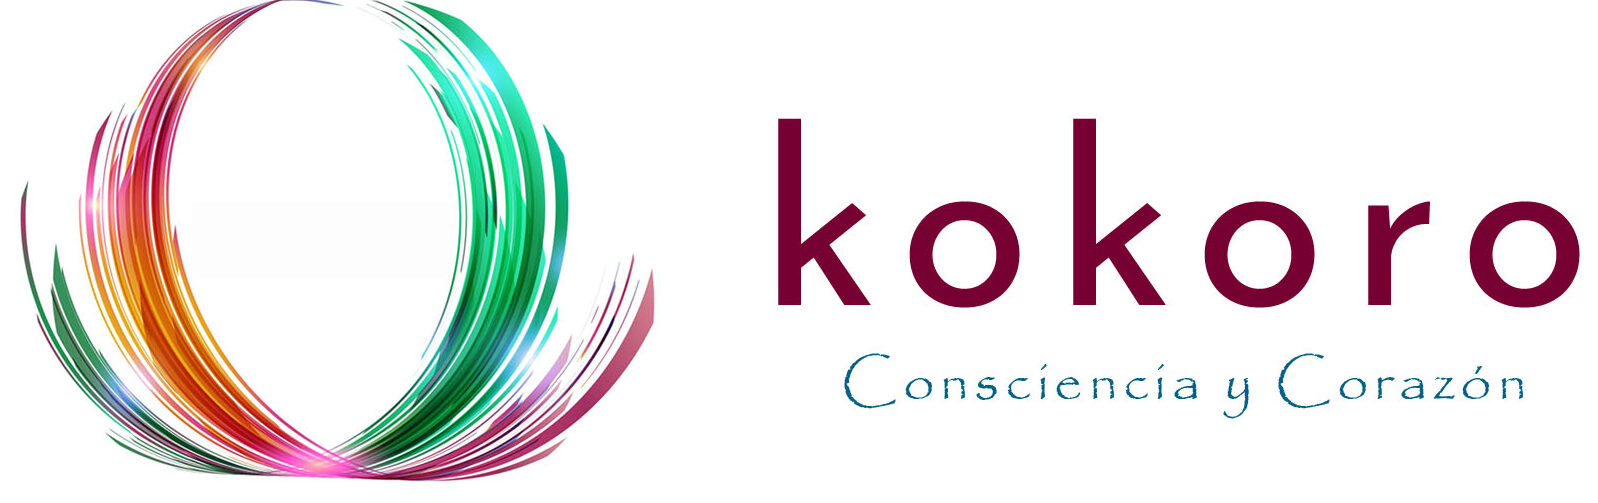 Kokoro-Consciencia y Corazón